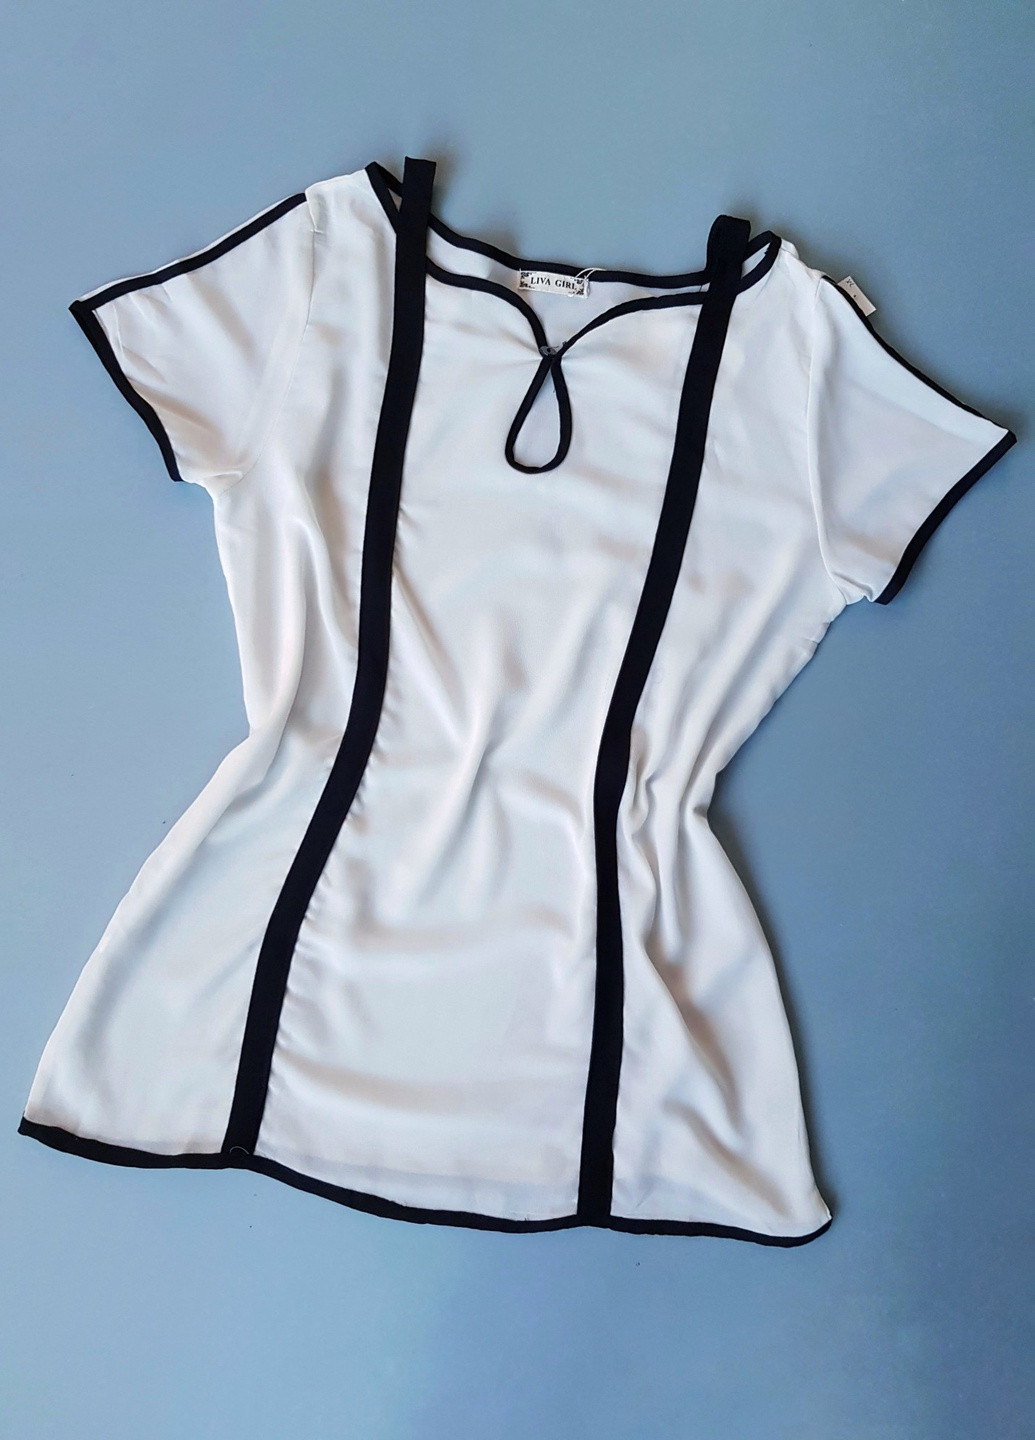 Белая летняя блузка женская белая с черными швами livagirl 955 xl(48) No Brand